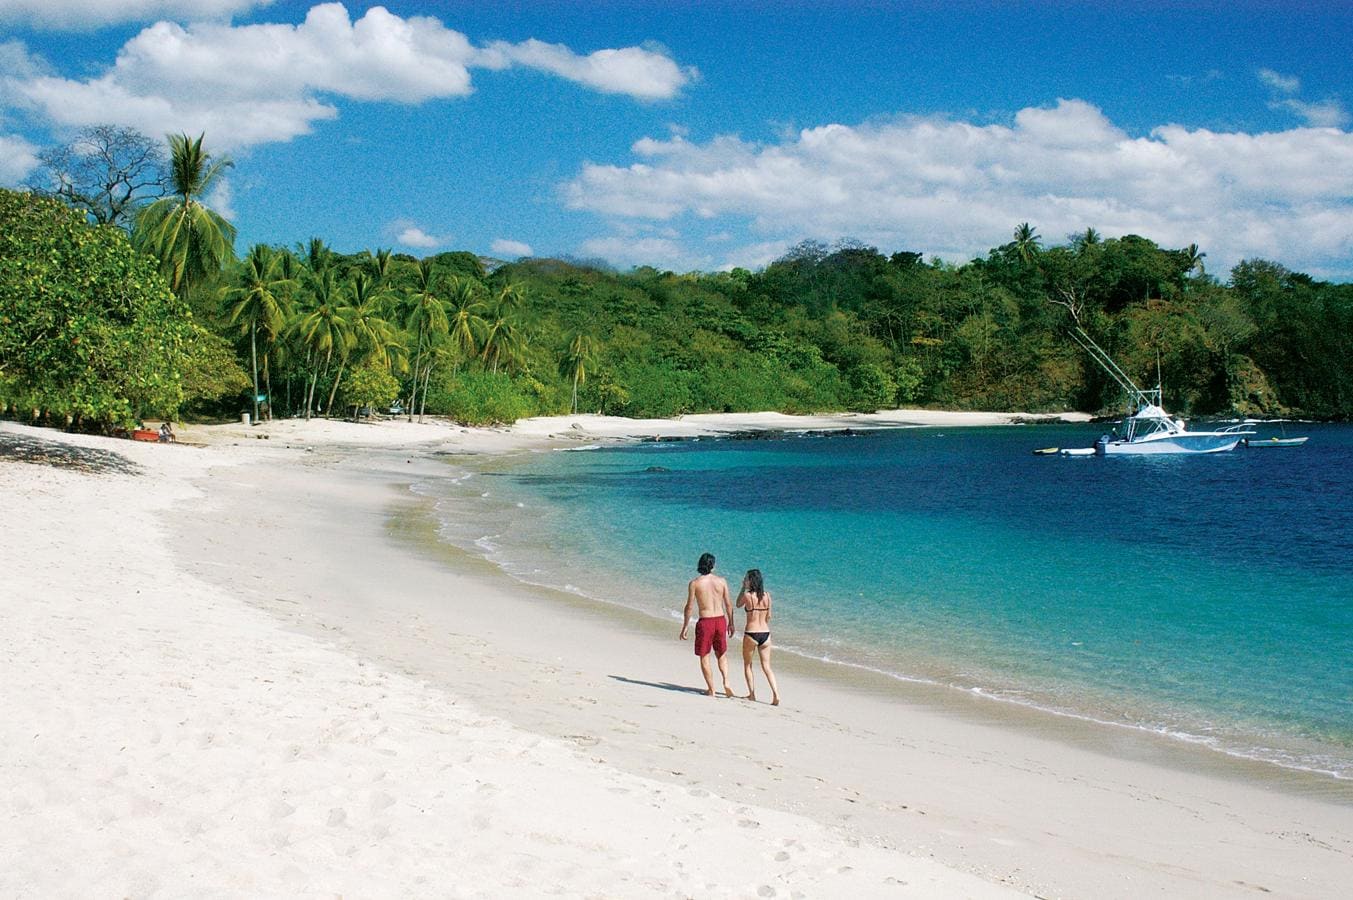 Un día de paz en Guanacaste. Costa Rica es un paraíso para los aficionados a las playas. Las encontraremos en el Caribe, como en el Parque Nacional de Cahuita, y también en el Pacífico, como en San Juanillo (en la foto). Es esta una playa en forma de herradura, arena blanca, alejada de los grandes resorts turísticos.